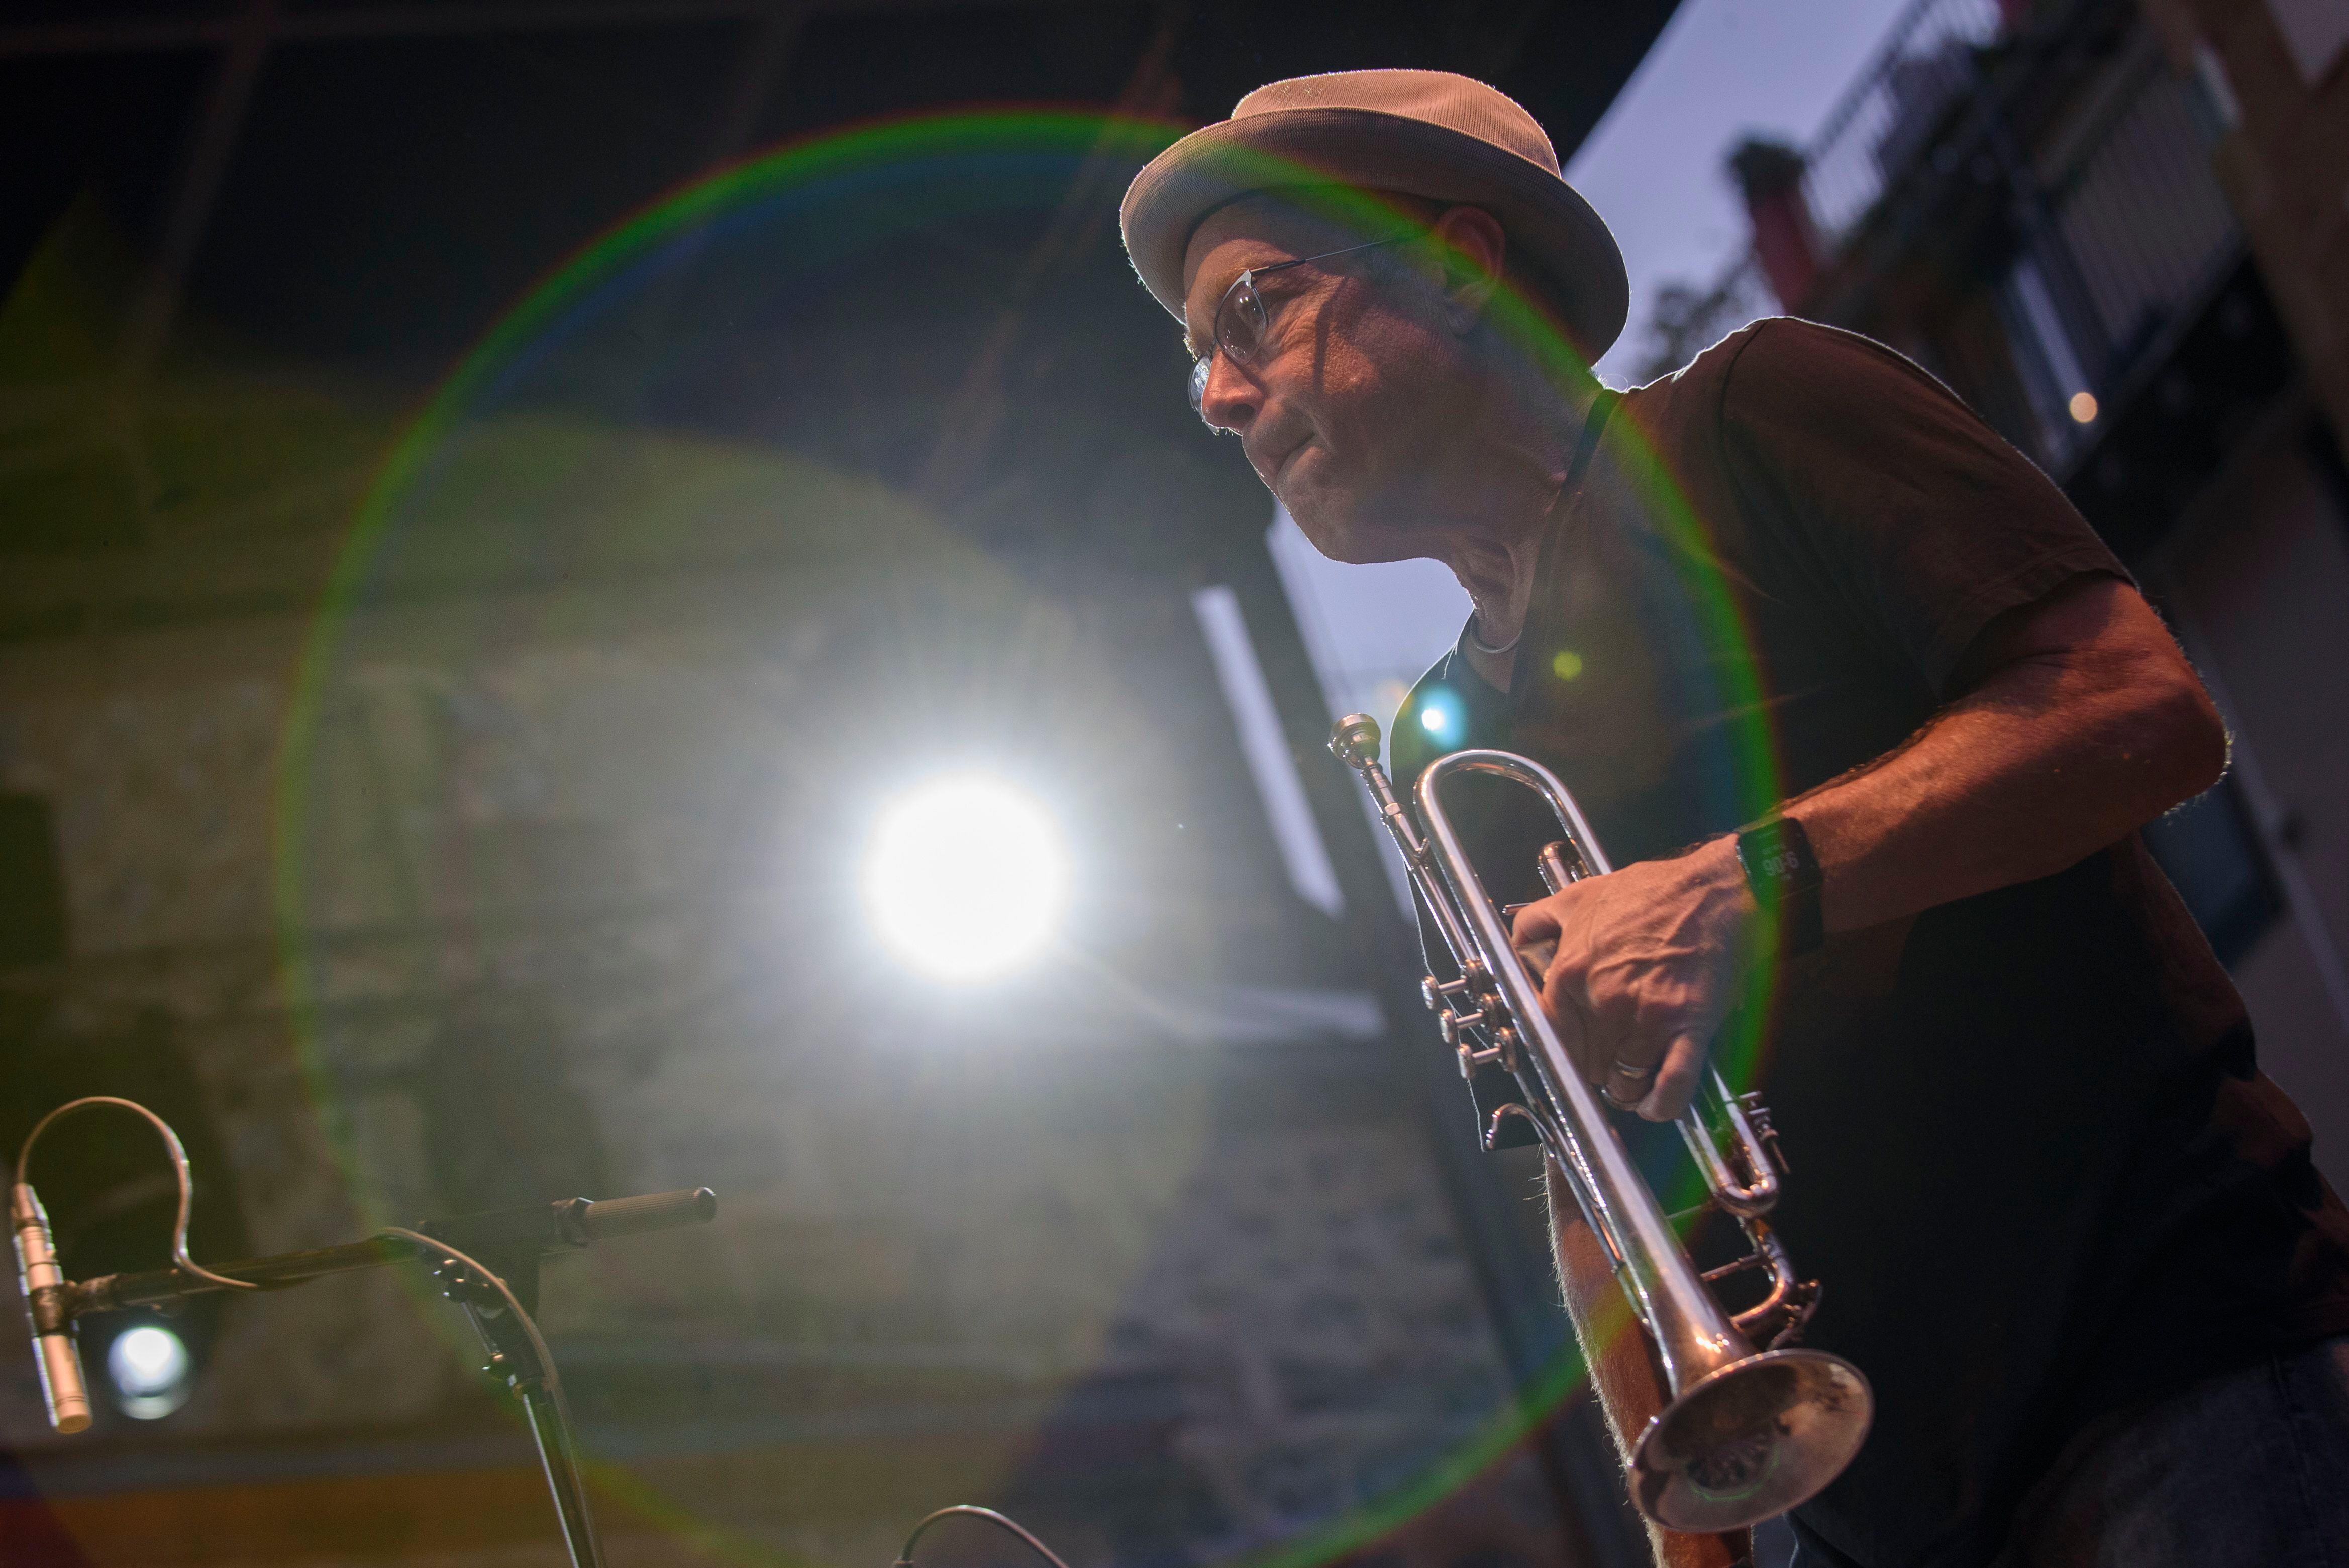 El trompetista estadounidense Dave Douglas en la 56ª edición de Donostiako Jazzaldia Jazz Festival, en julio de 2021 en San Sebastián.